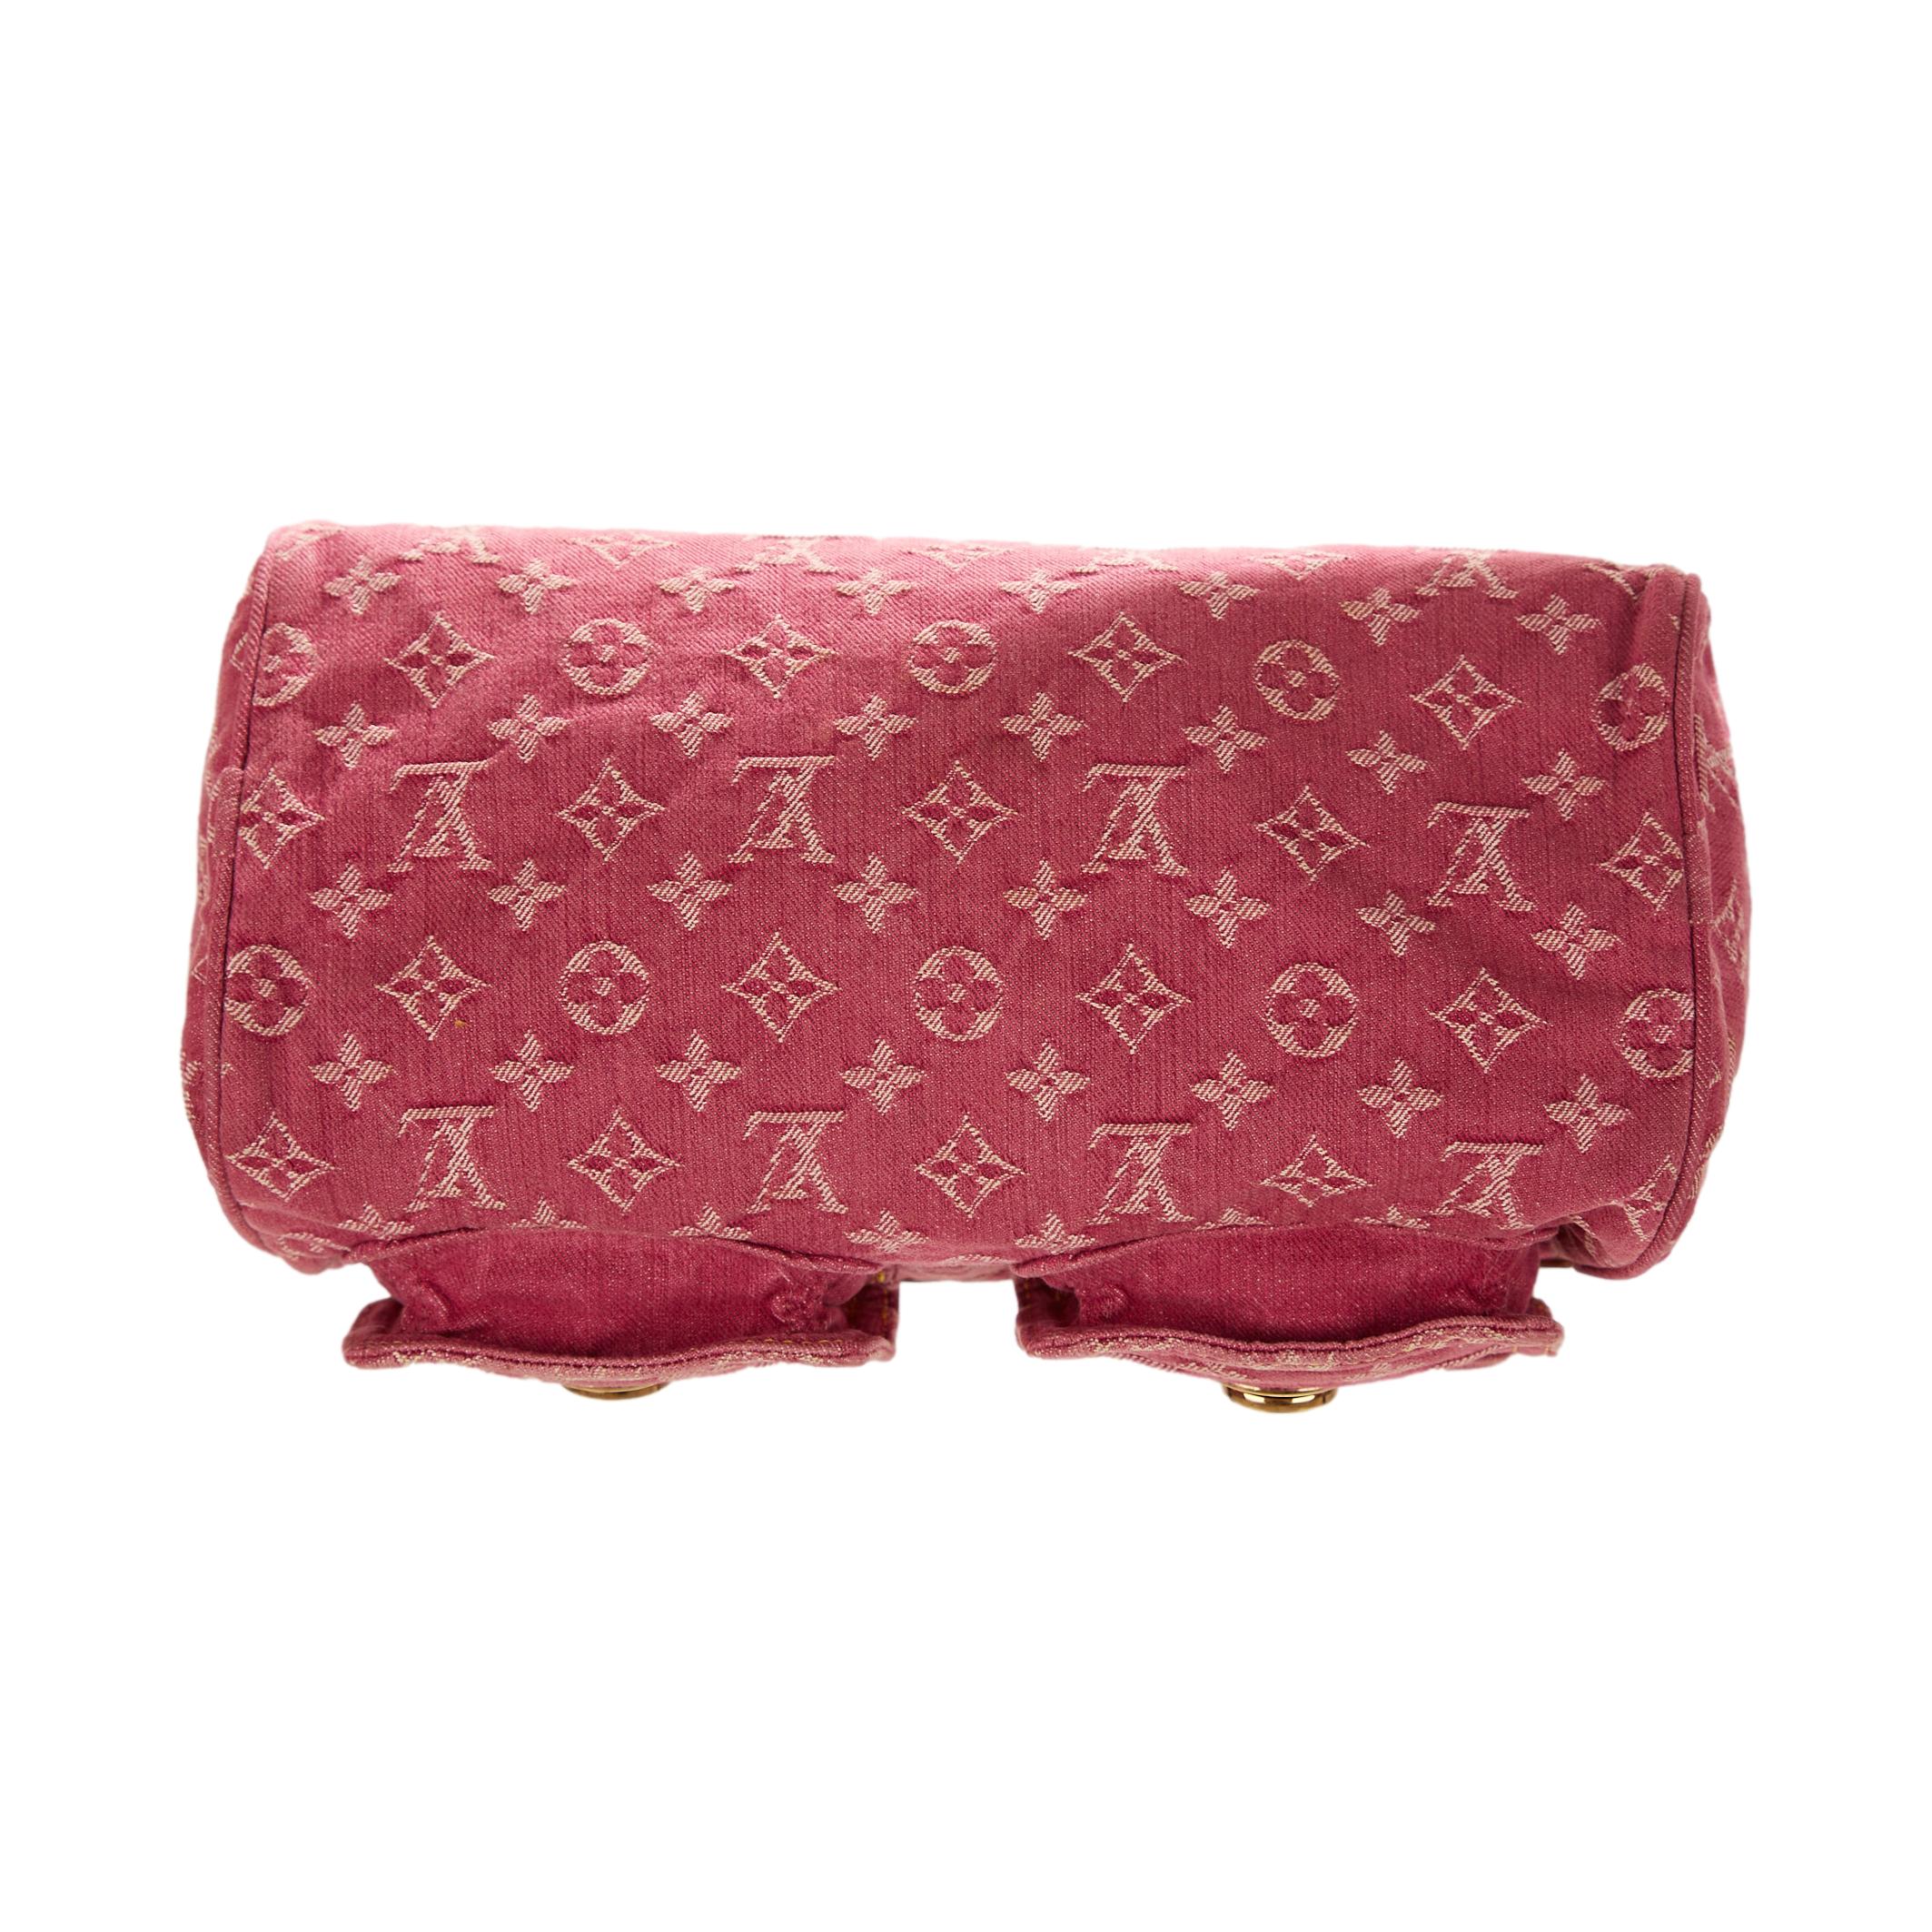 Rare Louis Vuitton Pink Denim Neo Speedy Handbag – Pickled Vintage